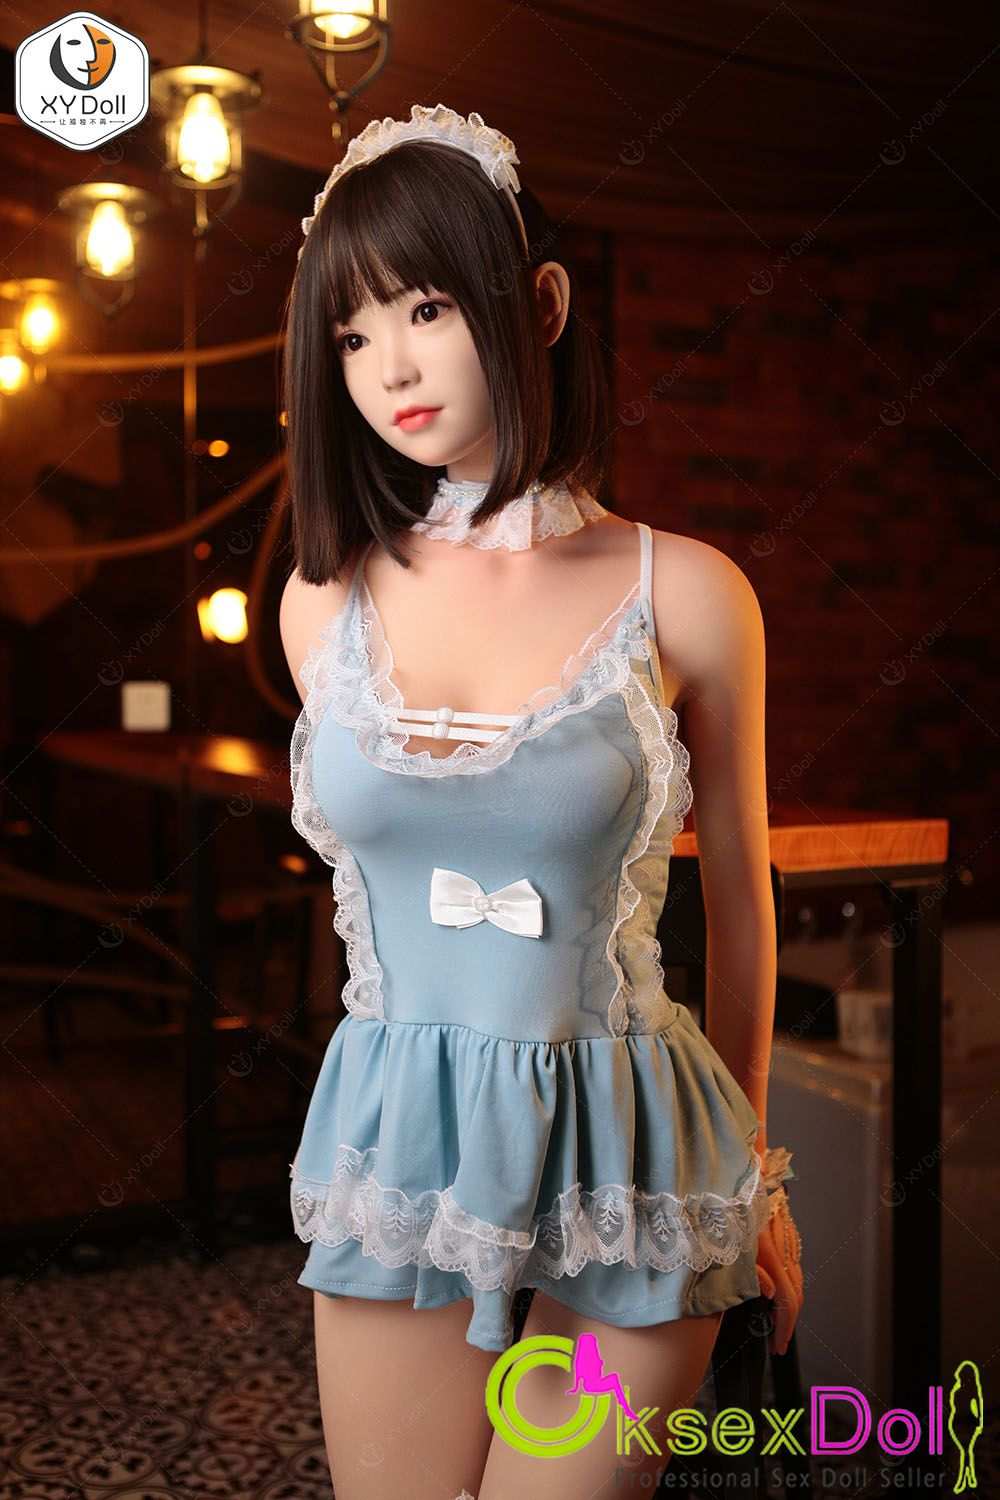 Cheap Sex Doll Image of Akiara